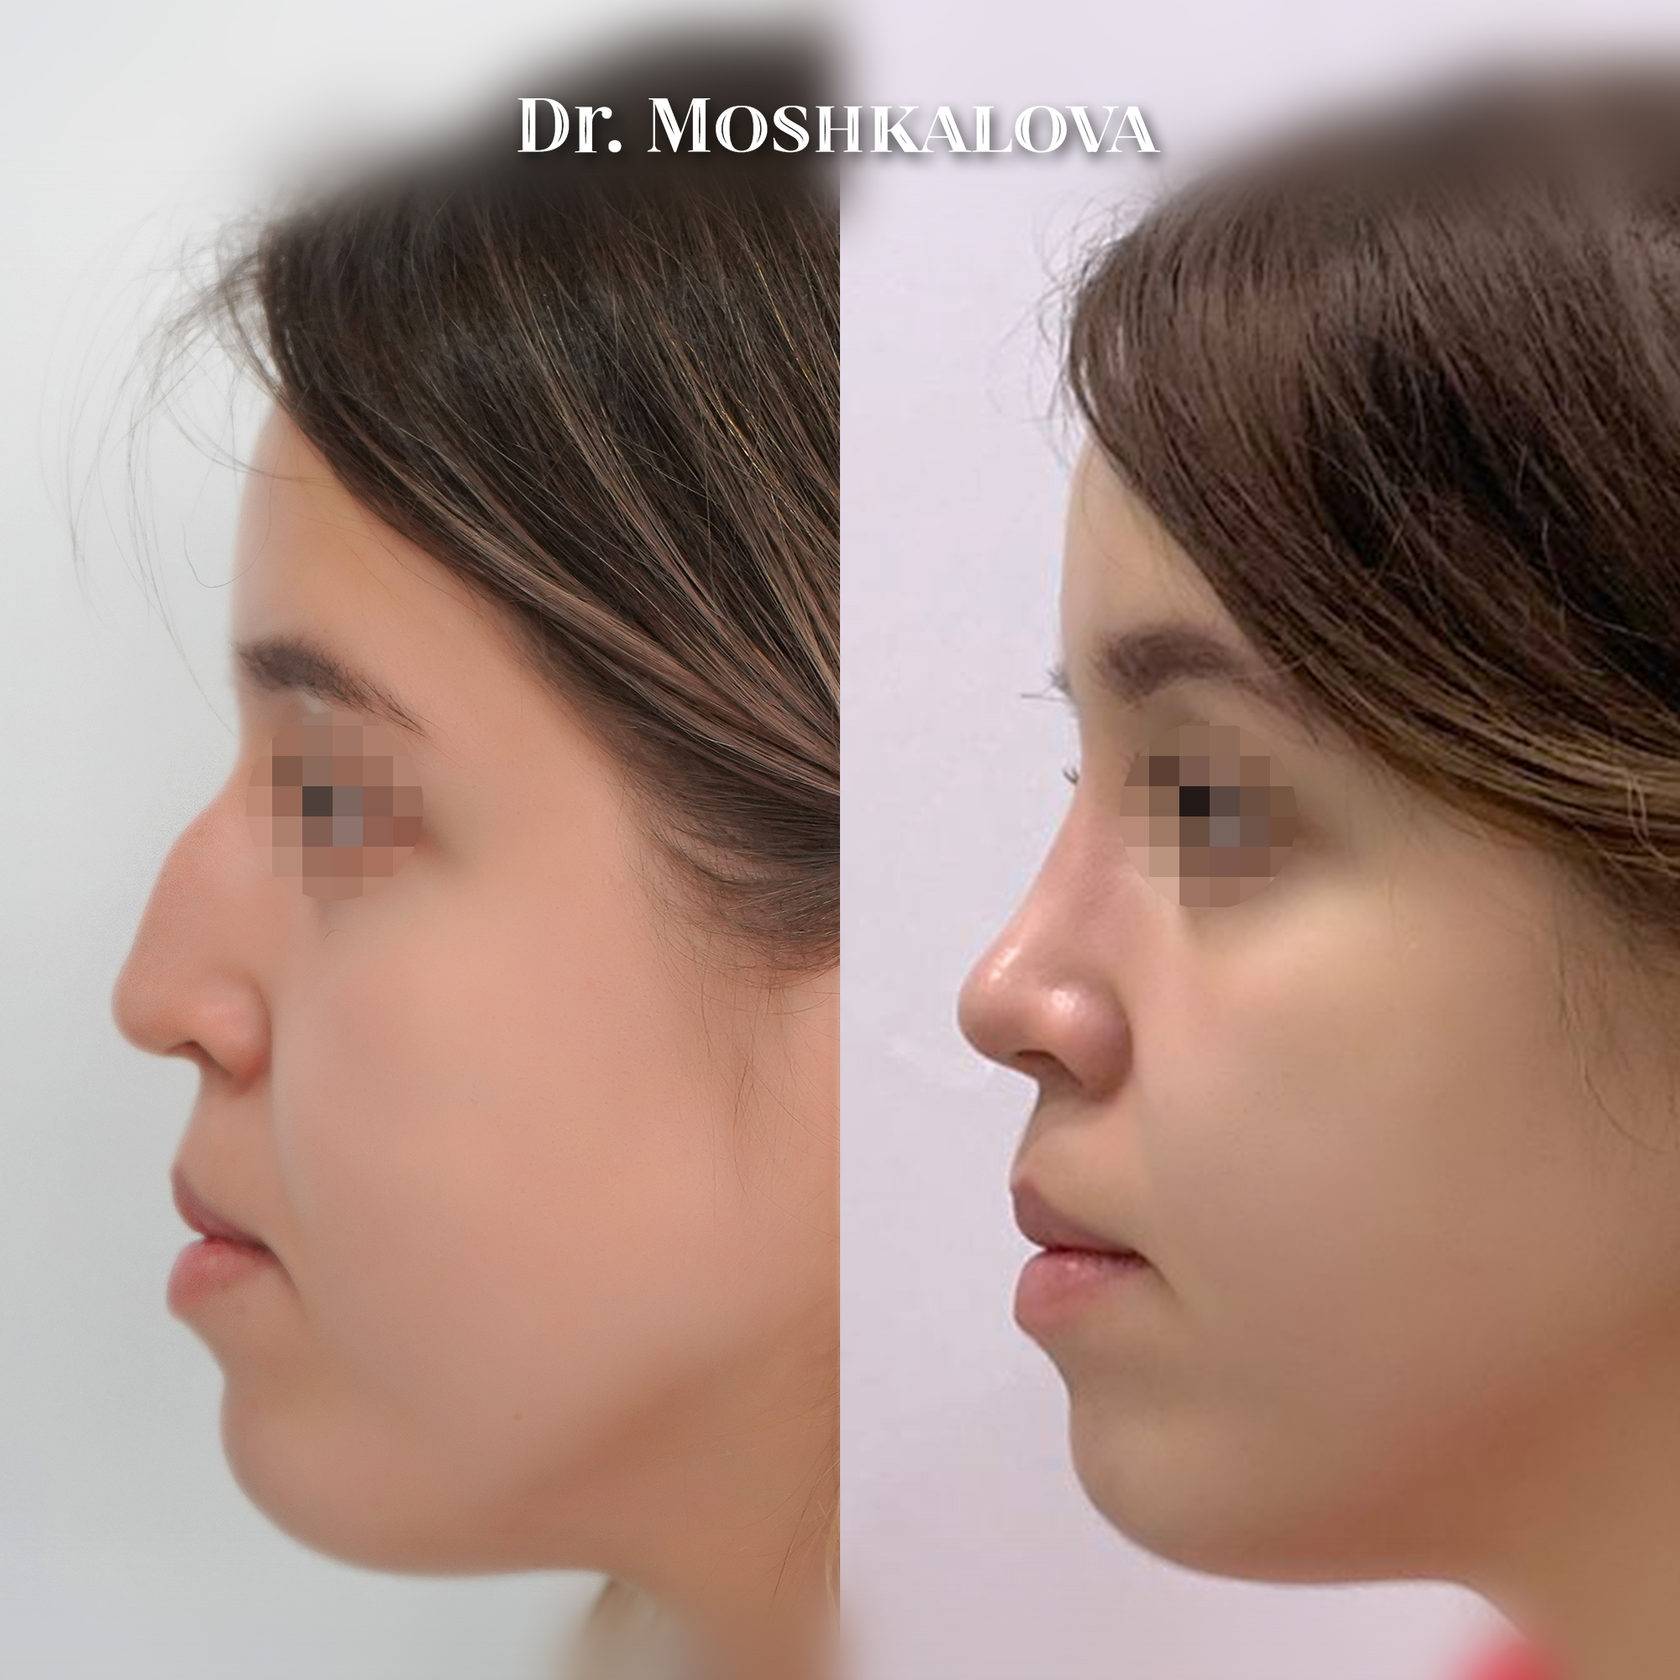 Мужская ринопластика носа - цены, отзывы, фото до и после | ринопластика носа